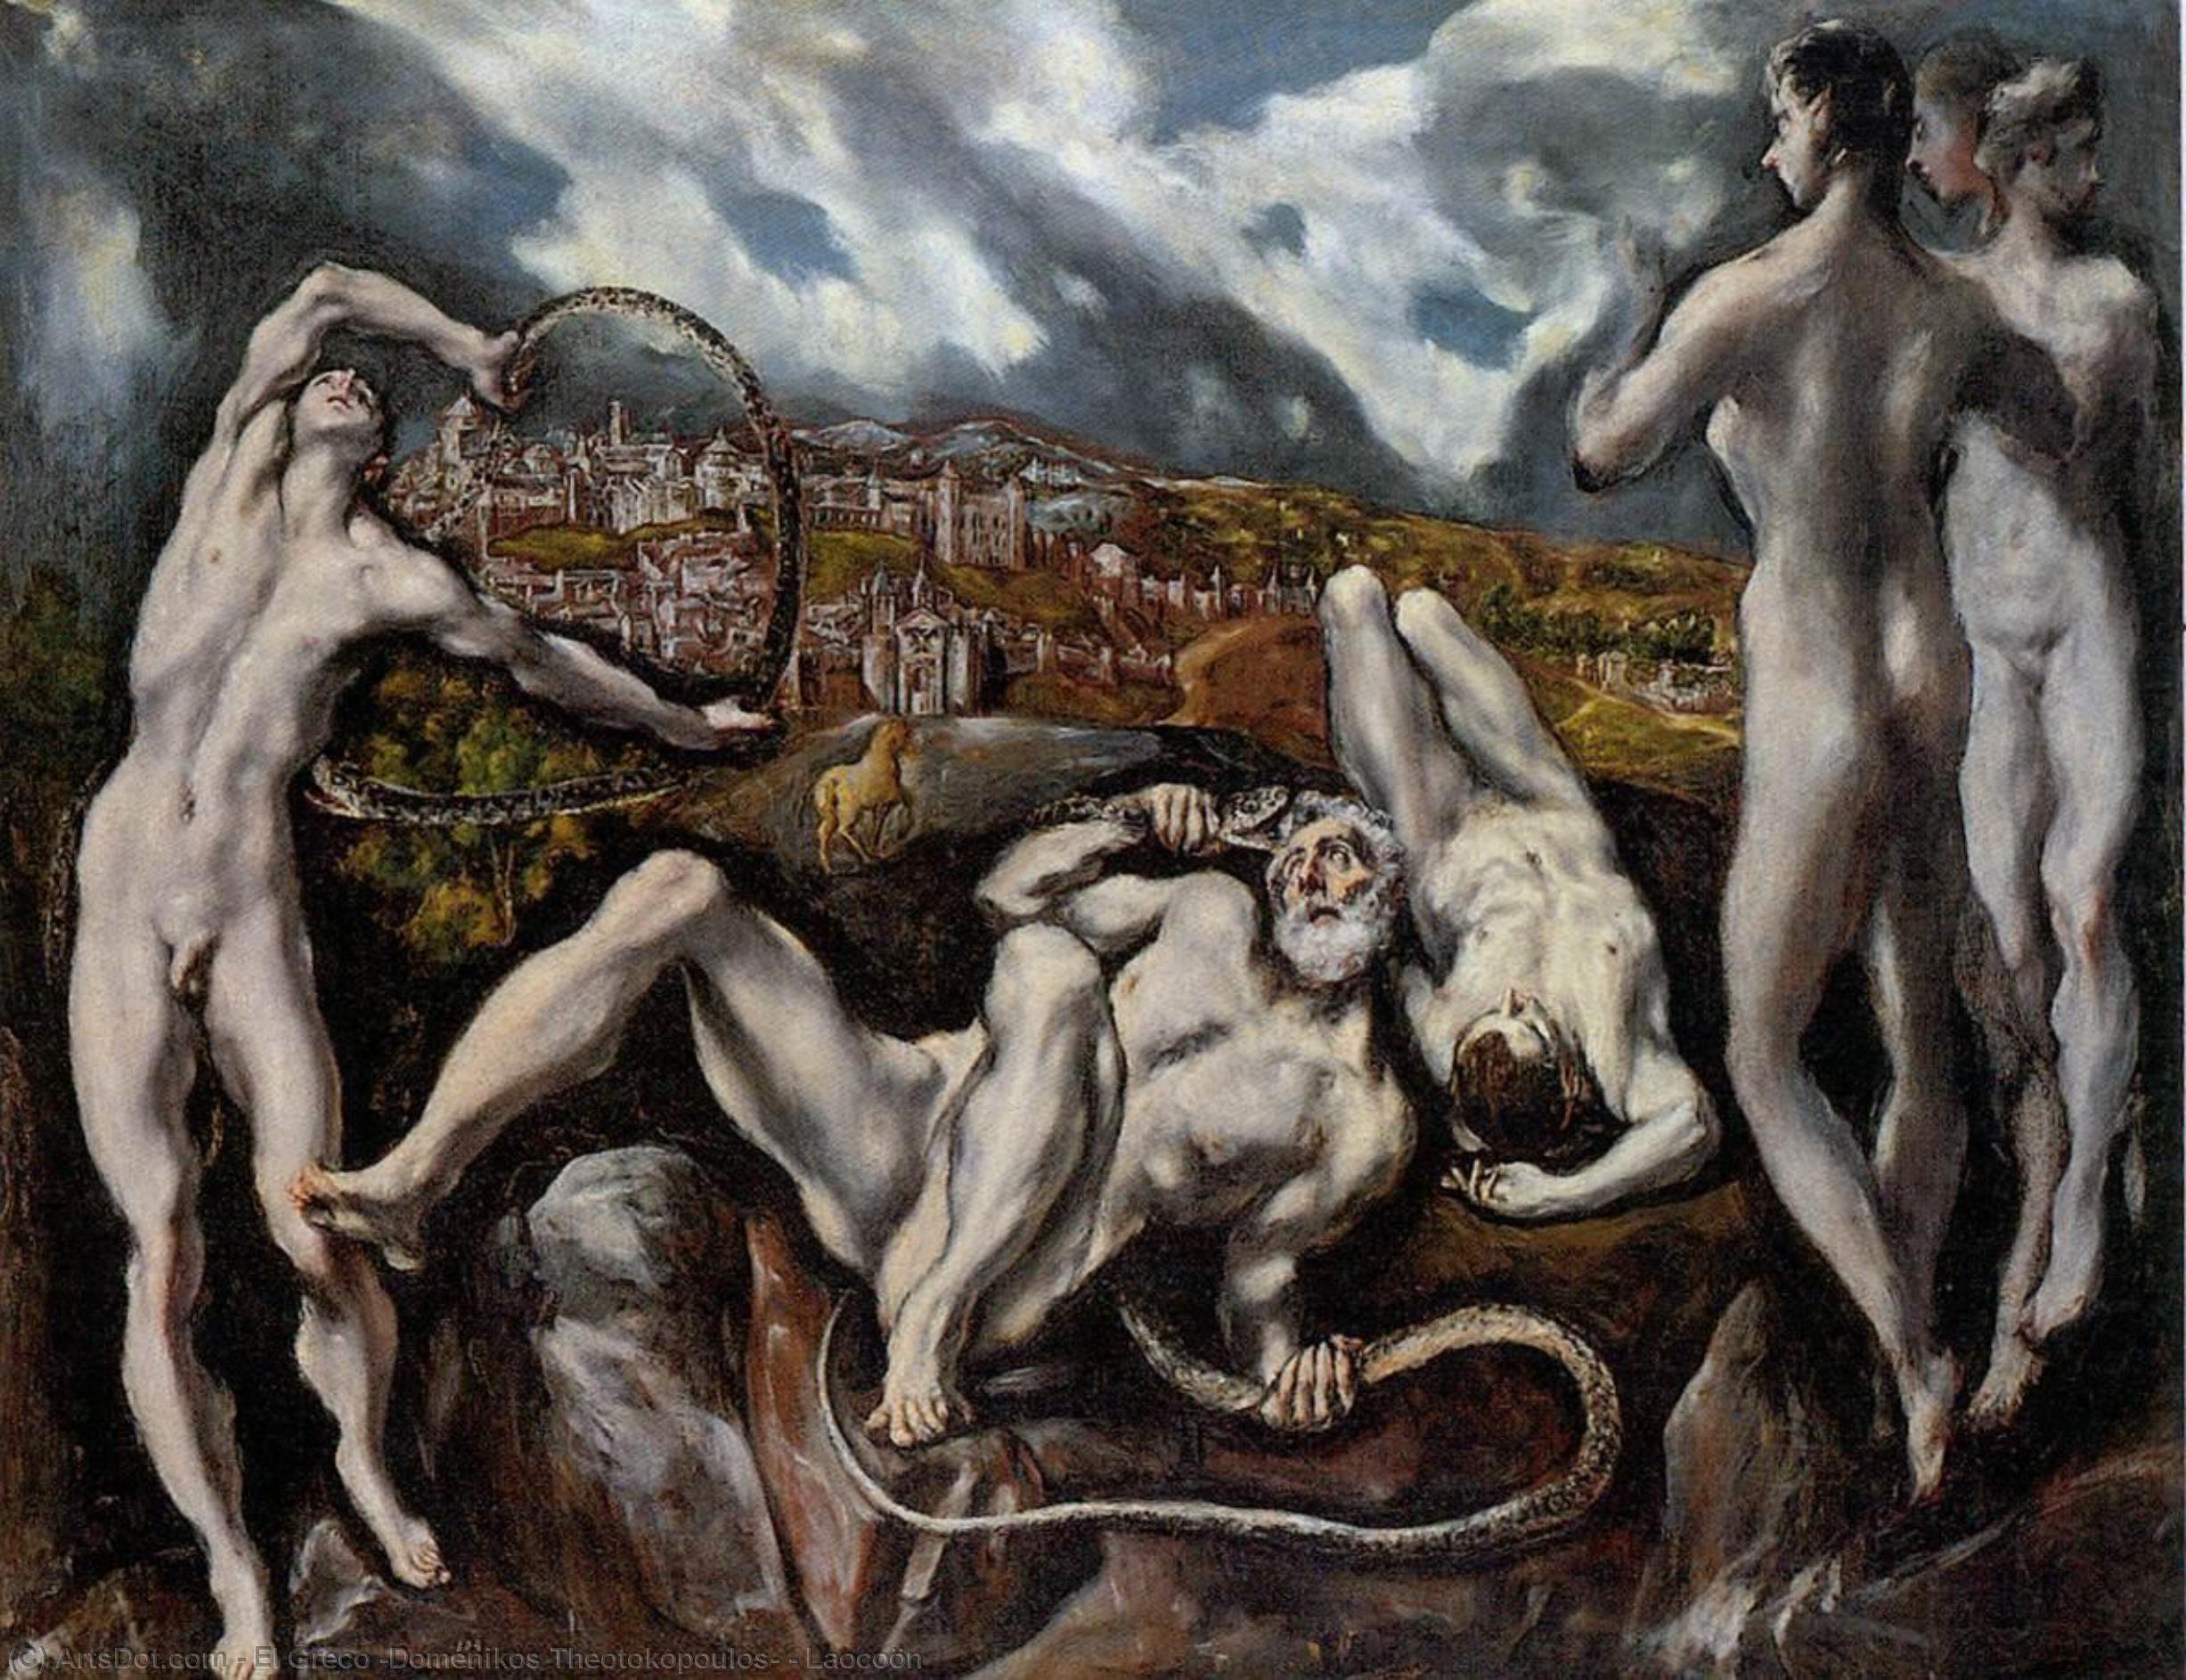 WikiOO.org - Encyclopedia of Fine Arts - Maleri, Artwork El Greco (Doménikos Theotokopoulos) - Laocoön